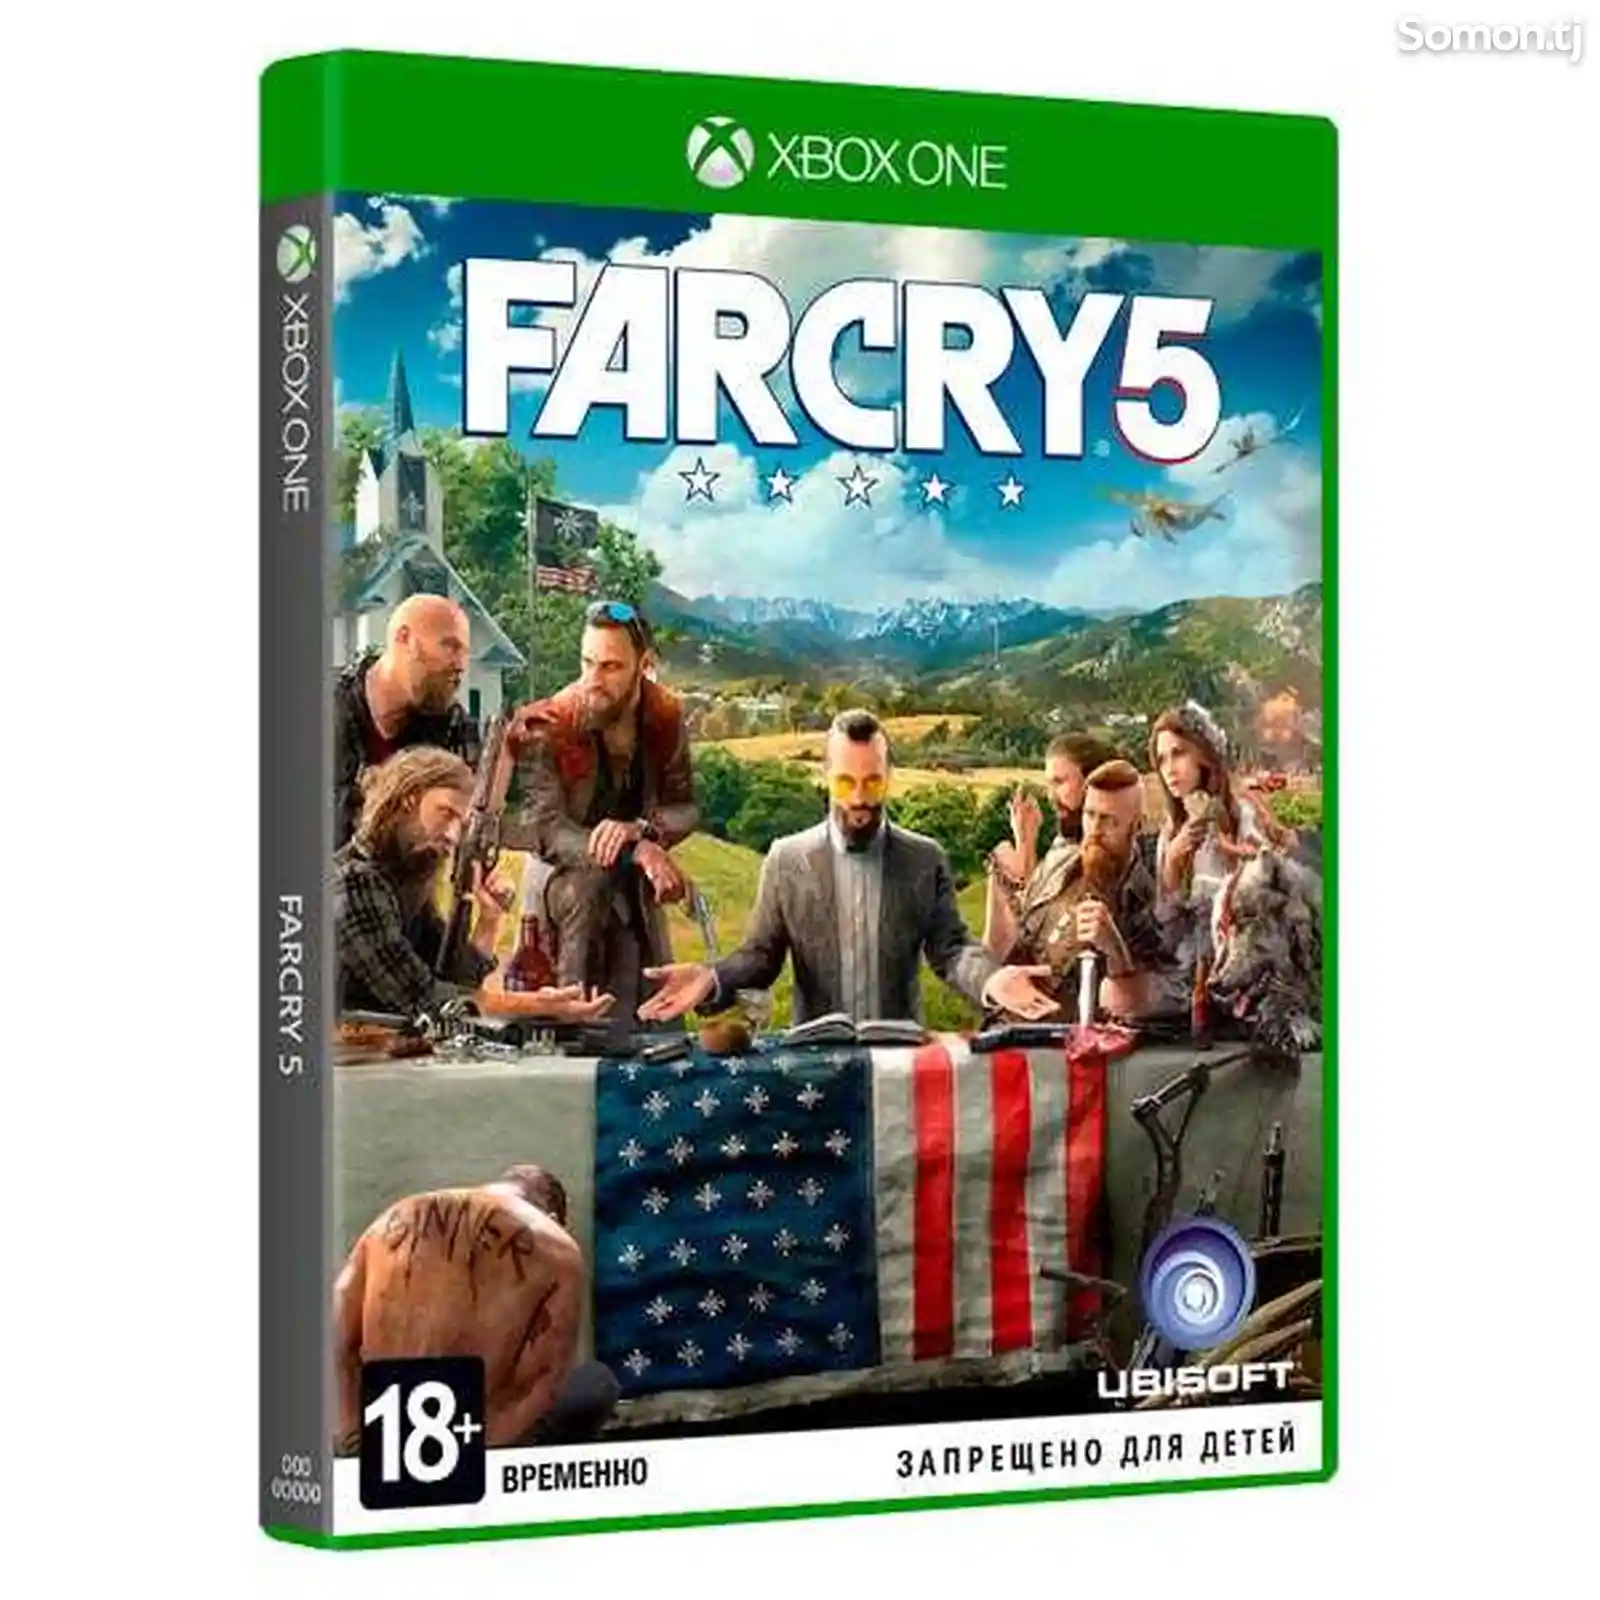 Xbox One игра Ubisoft Far Cry 5